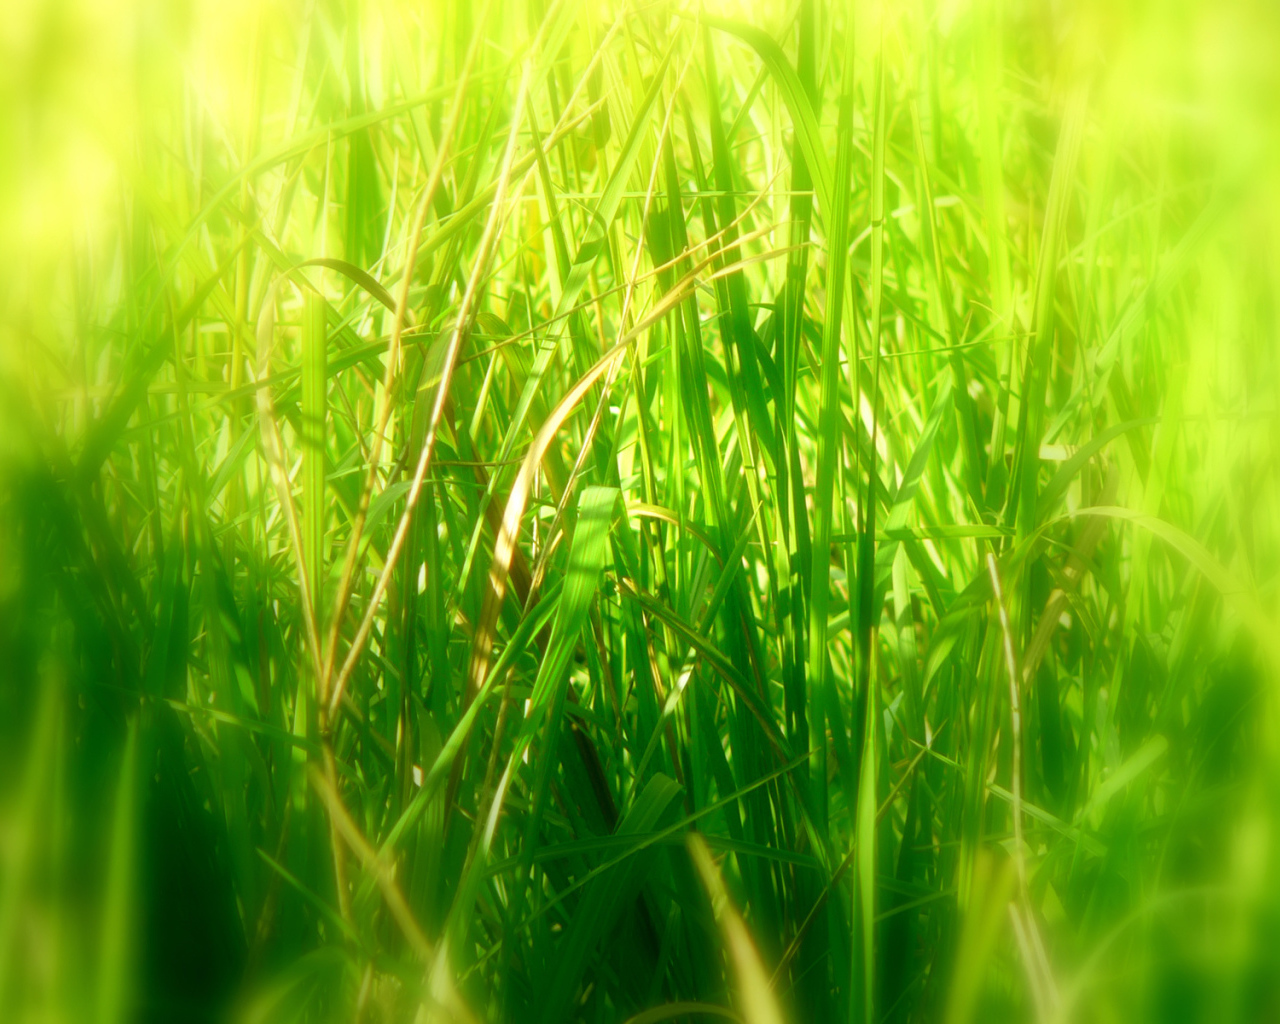 Deep grass